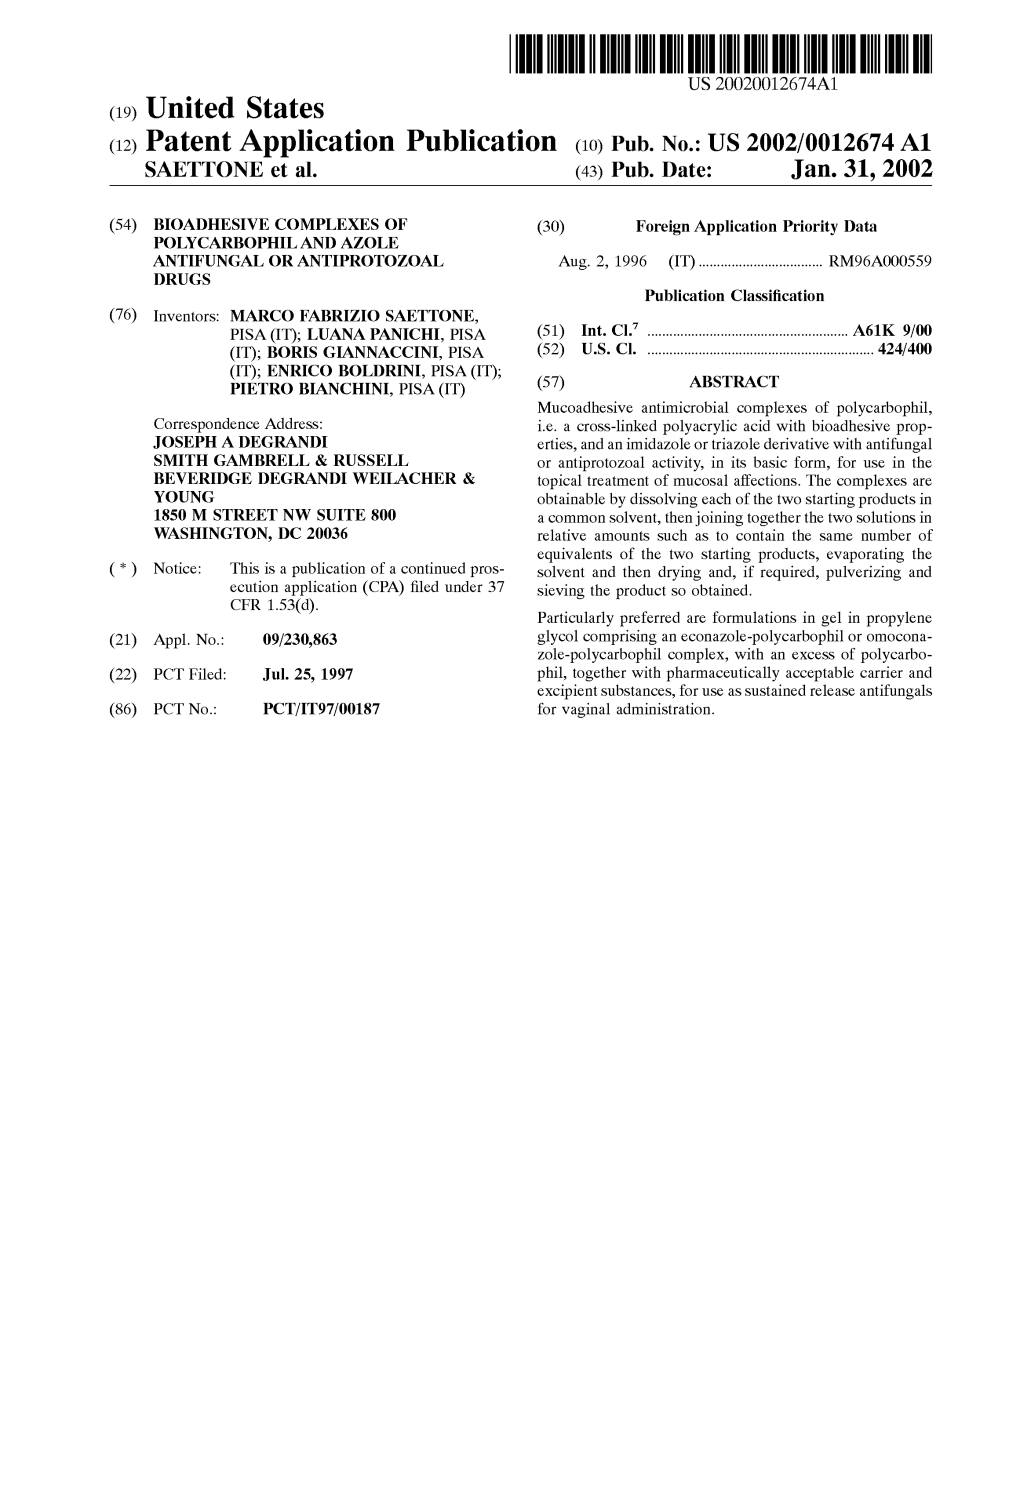 (12) Patent Application Publication (10) Pub. No.: US 2002/0012674 A1 SAETTONE Et Al